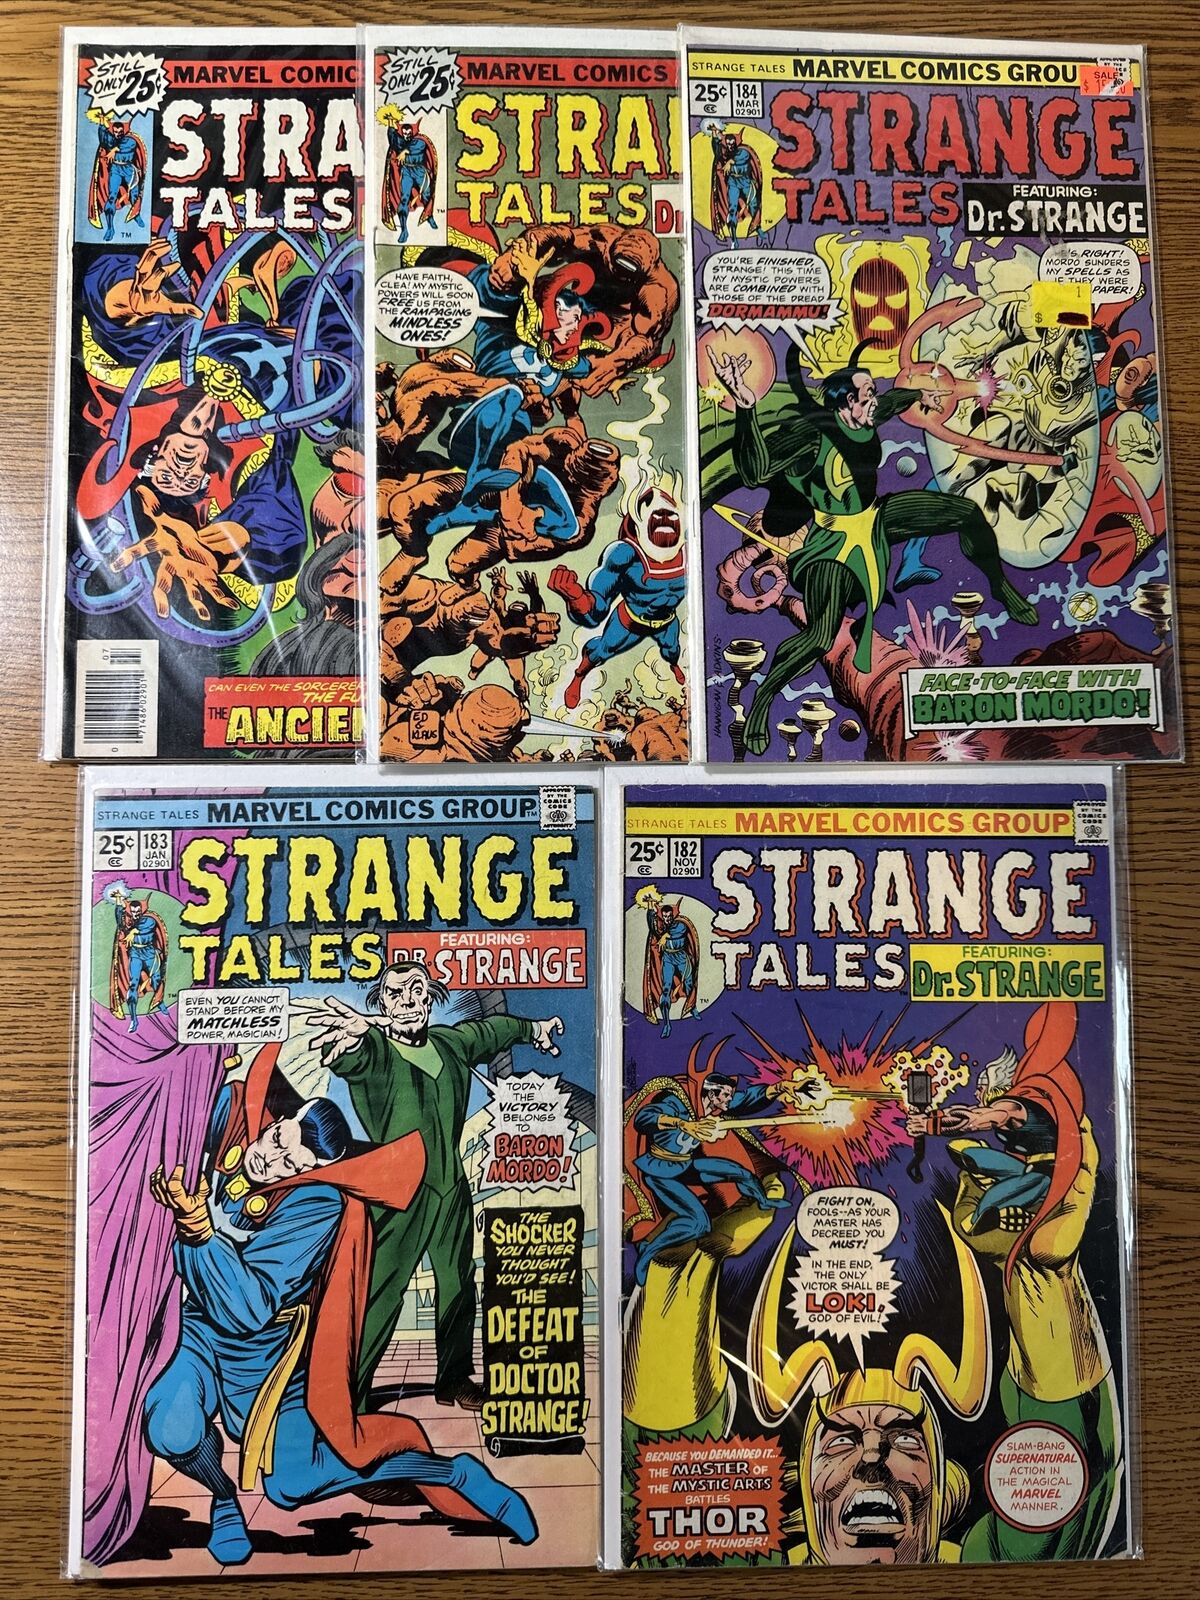 Strange Tales #182 183 184 185 186 Matvel Comics Lot Run Set Thor Loki 1979 G/VG